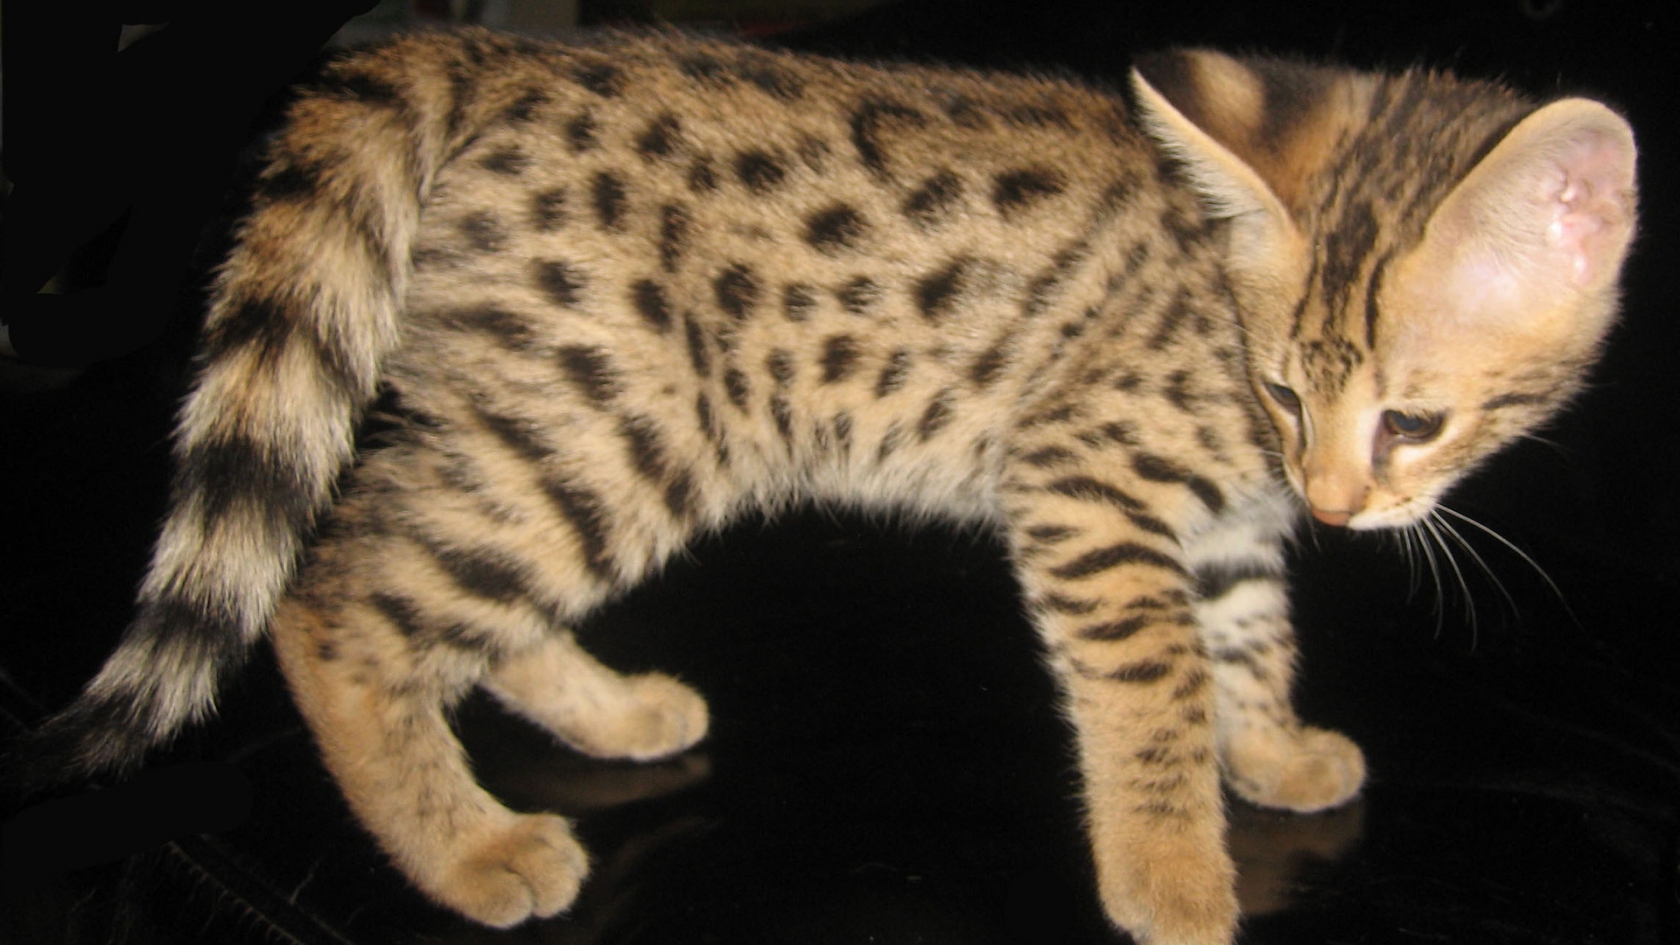 Savannah Kitten for 1680 x 945 HDTV resolution